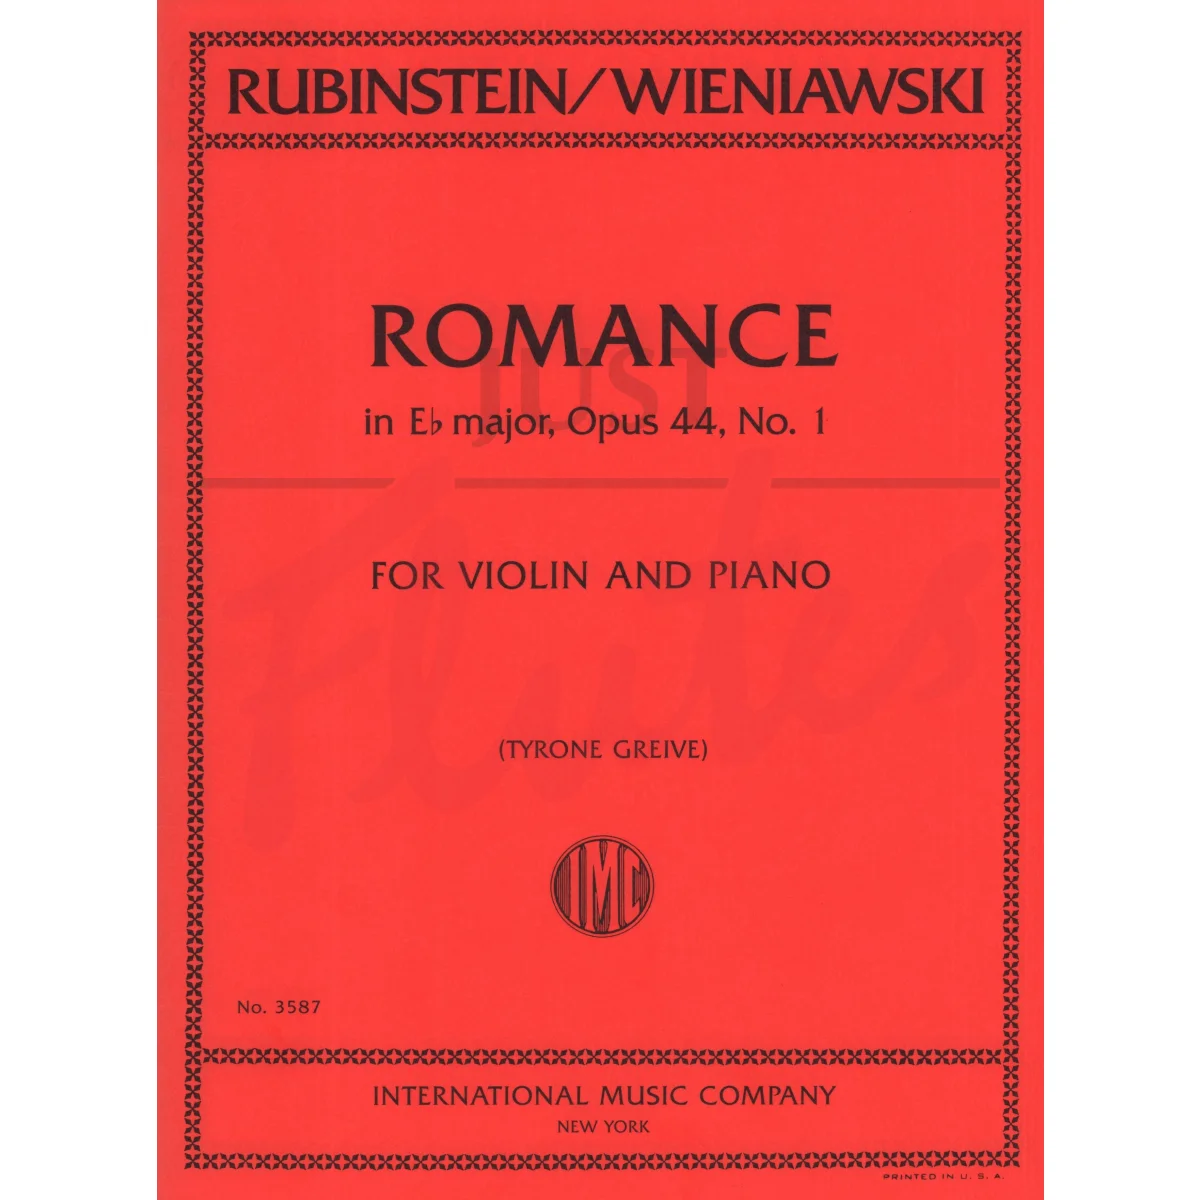 Romance in Eb for Violin and Piano